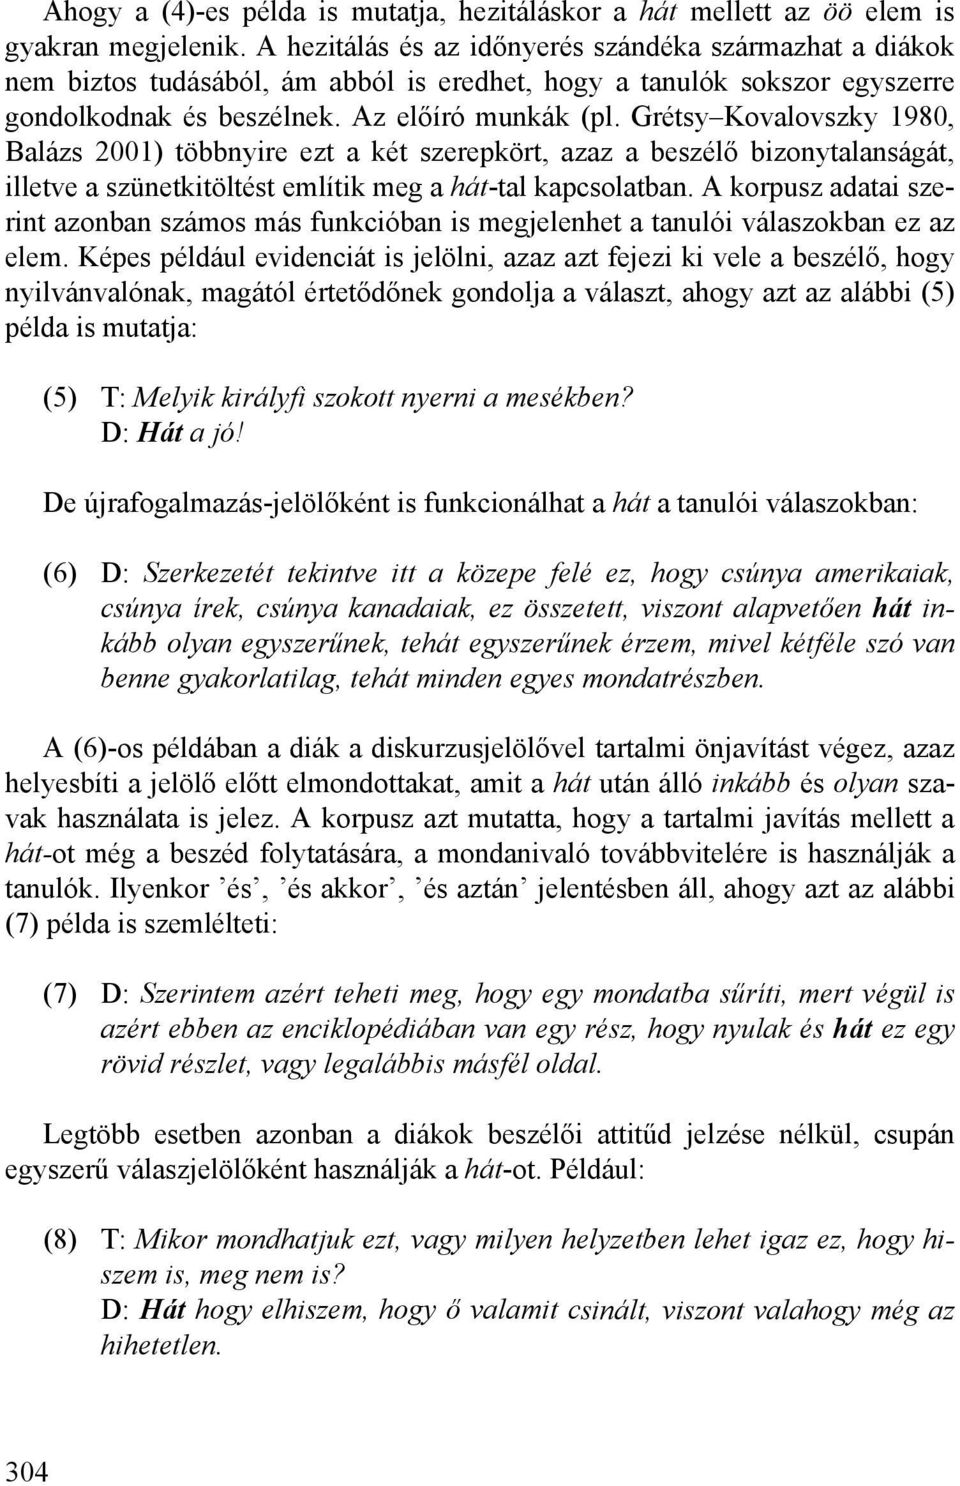 Grétsy Kovalovszky 1980, Balázs 2001) többnyire ezt a két szerepkört, azaz a beszélő bizonytalanságát, illetve a szünetkitöltést említik meg a hát-tal kapcsolatban.